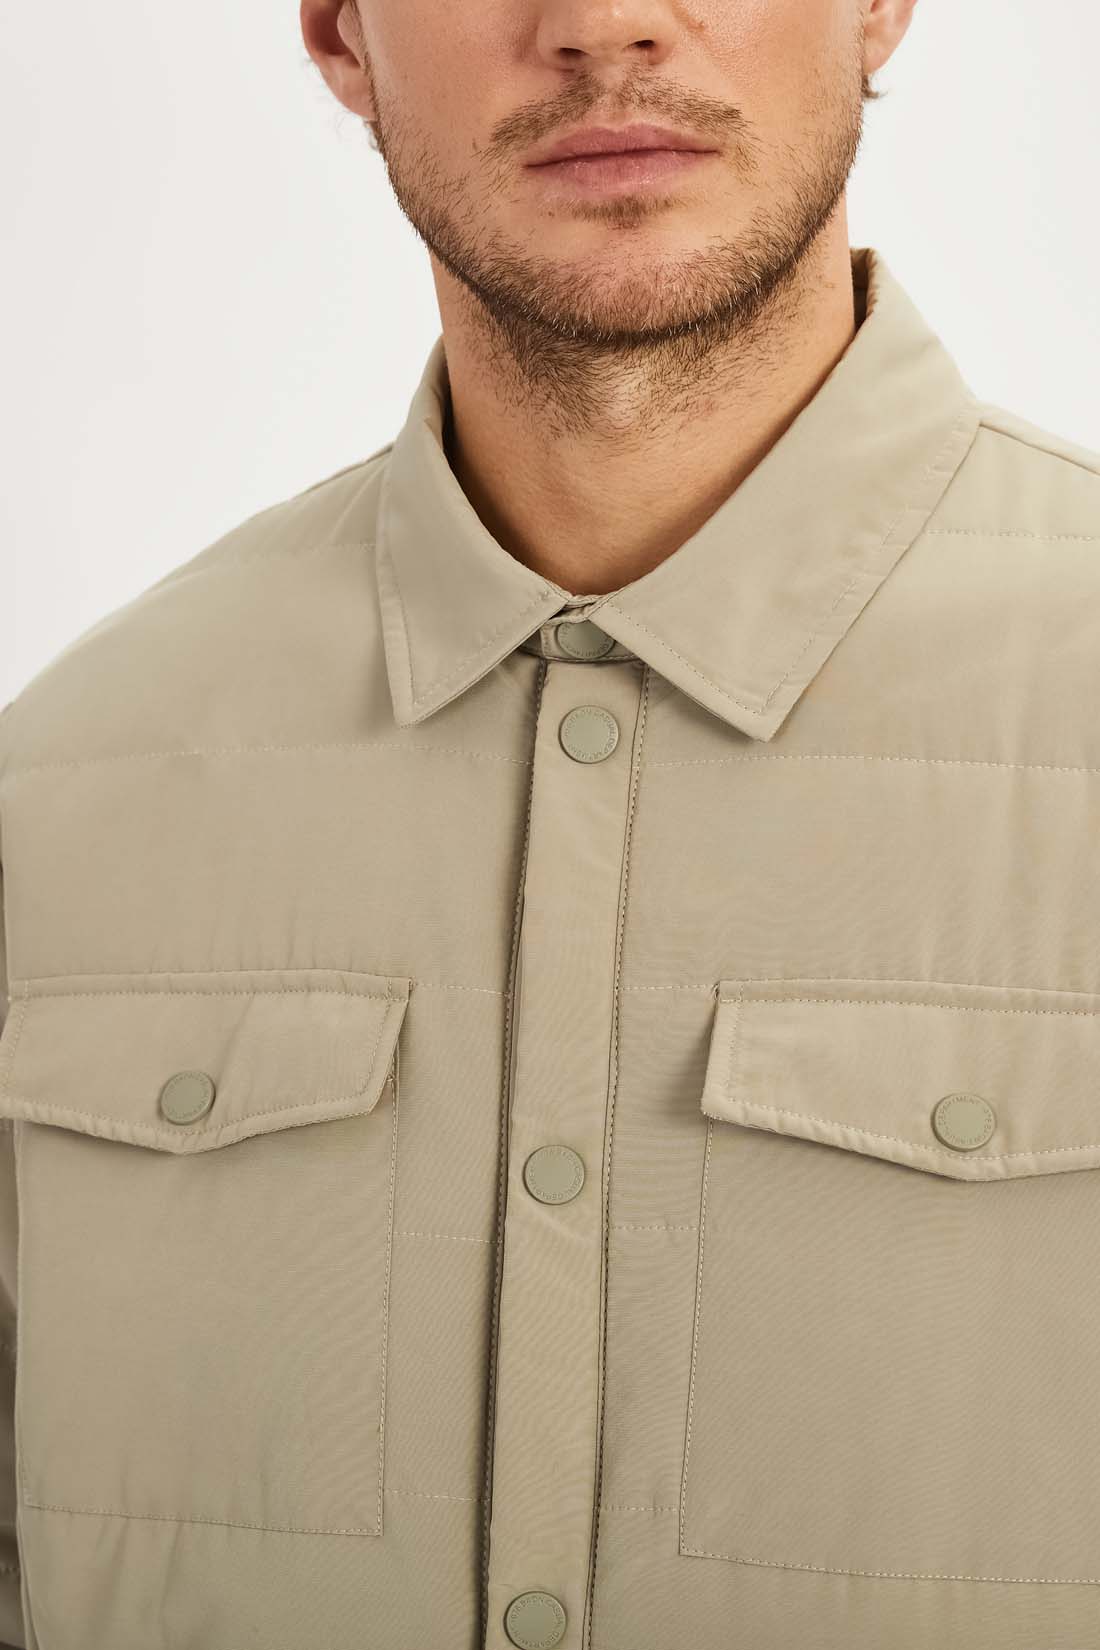 Куртка (арт. baon B5322007), размер M, цвет бежевый Куртка (арт. baon B5322007) - фото 3